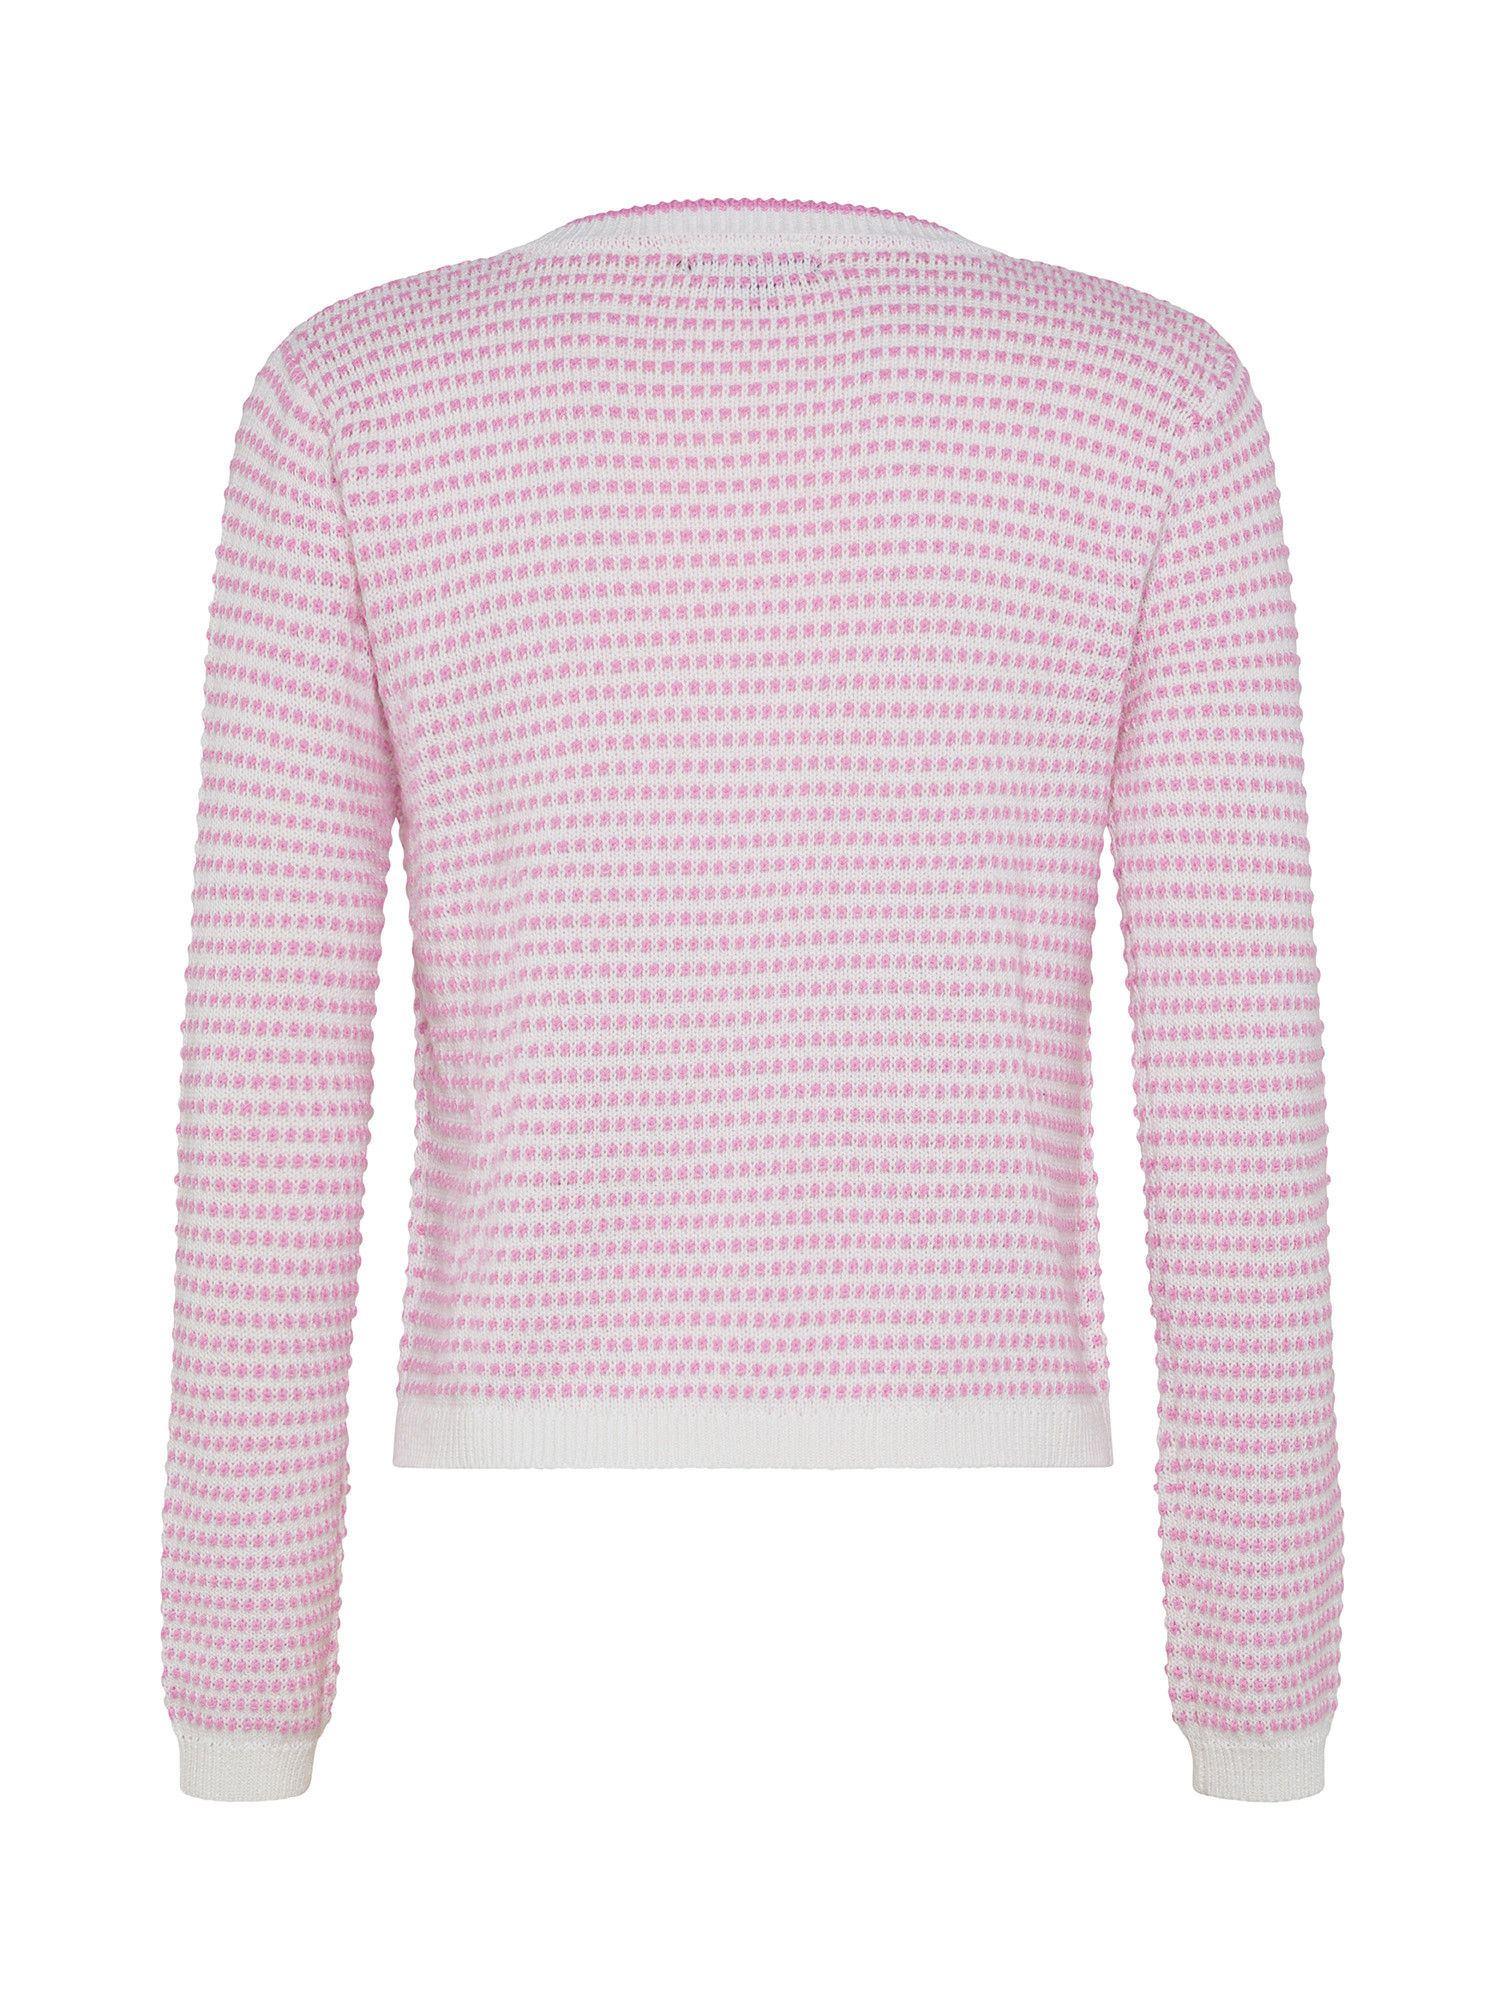 Koan - Two-tone cardigan, Pink, large image number 1